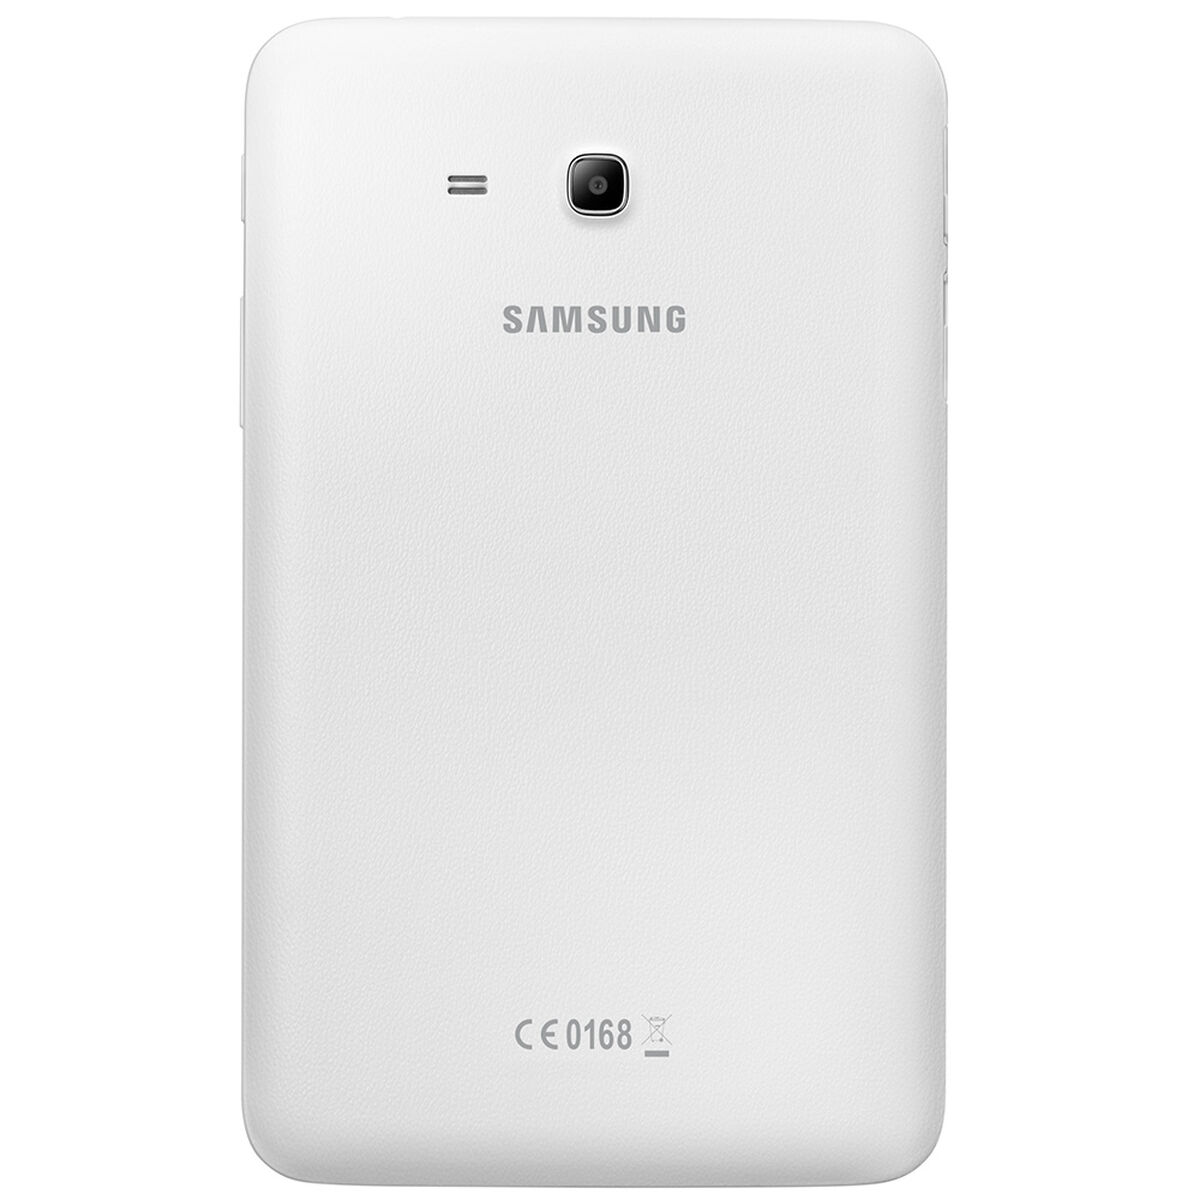 Tablet Samsung SM-T113 Quad Core 1GB 8GB 7" Blanco